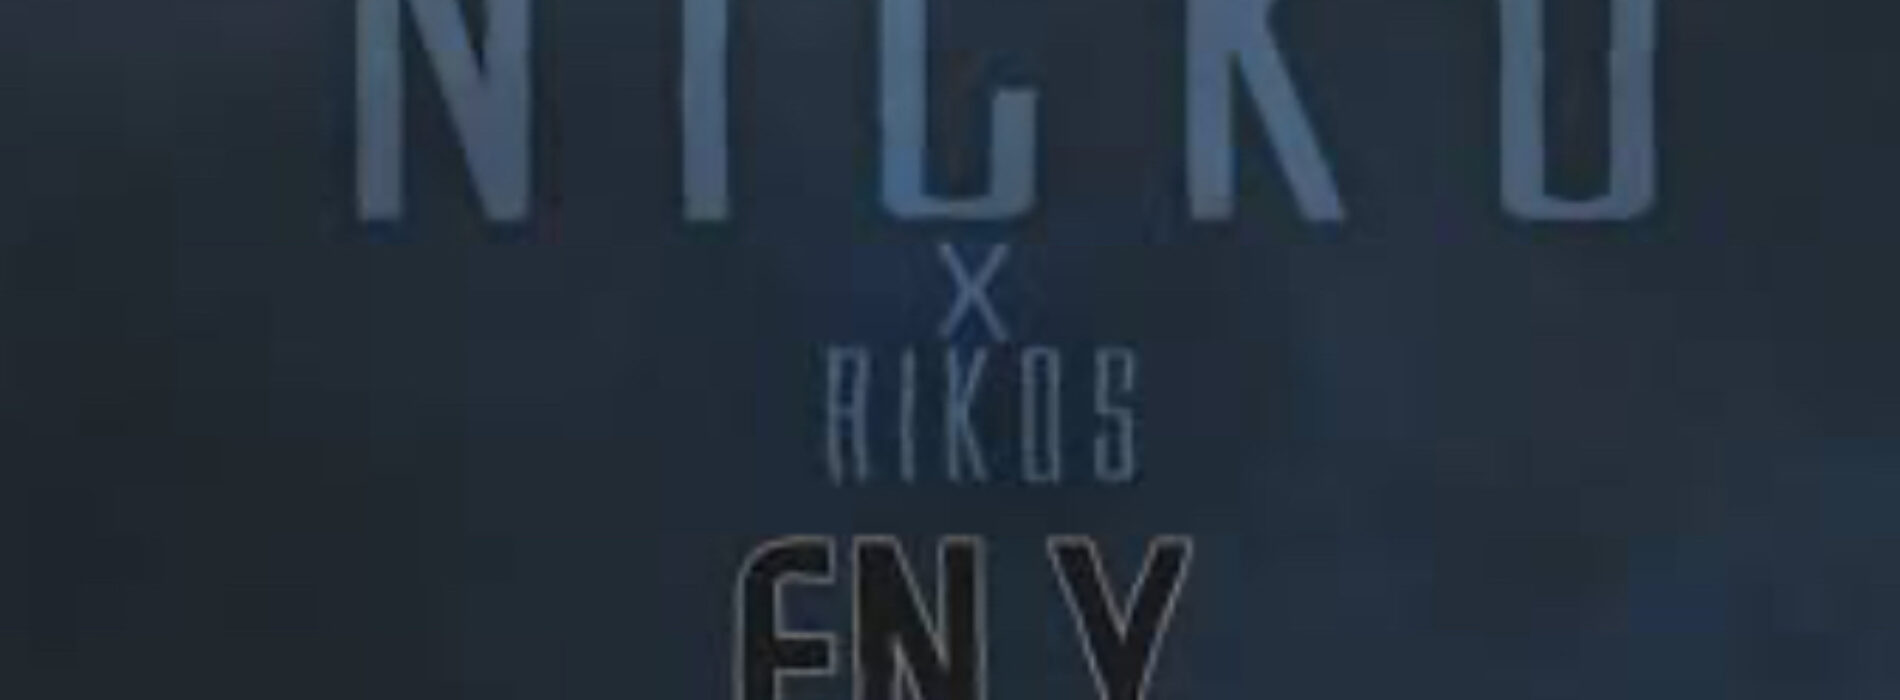 Nicko feat Rikos – En y – Avril 2021